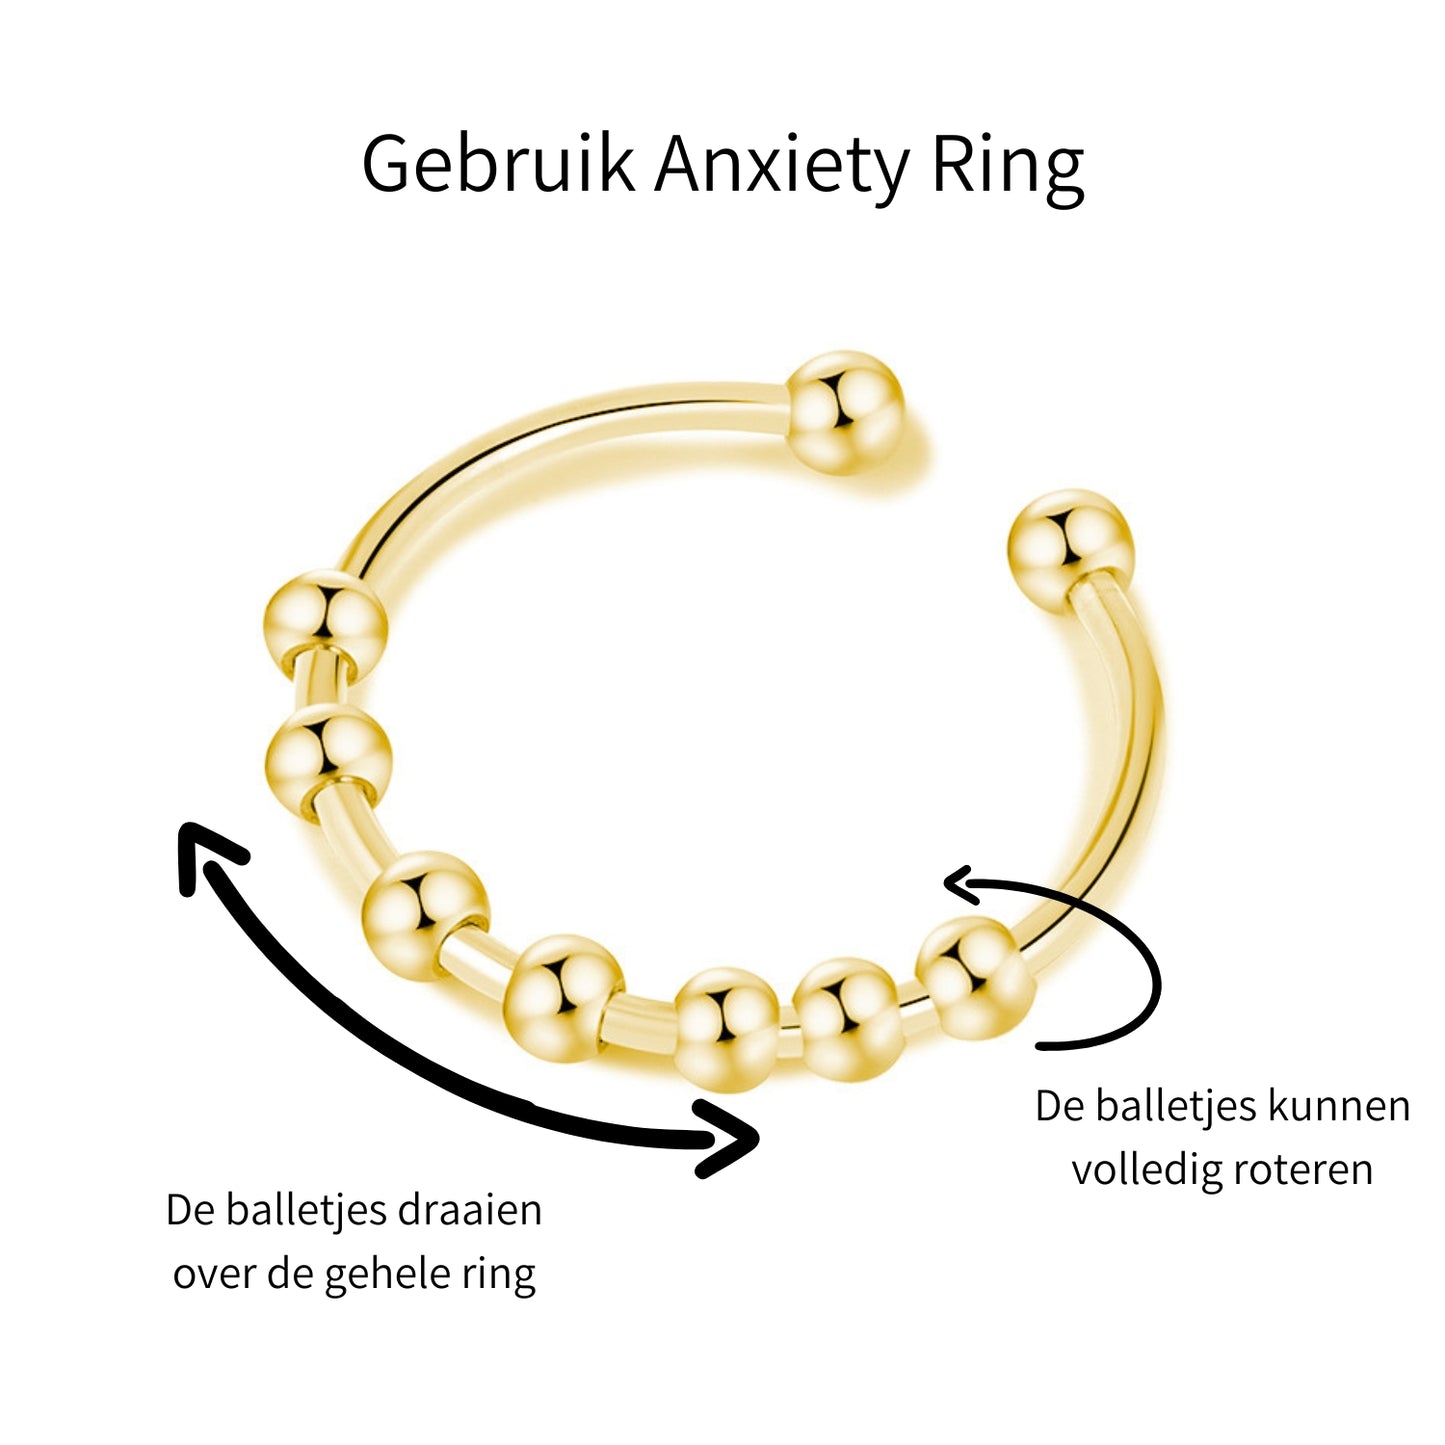 Anxiety Ring goud kleurig (RVS) one size Gebruik